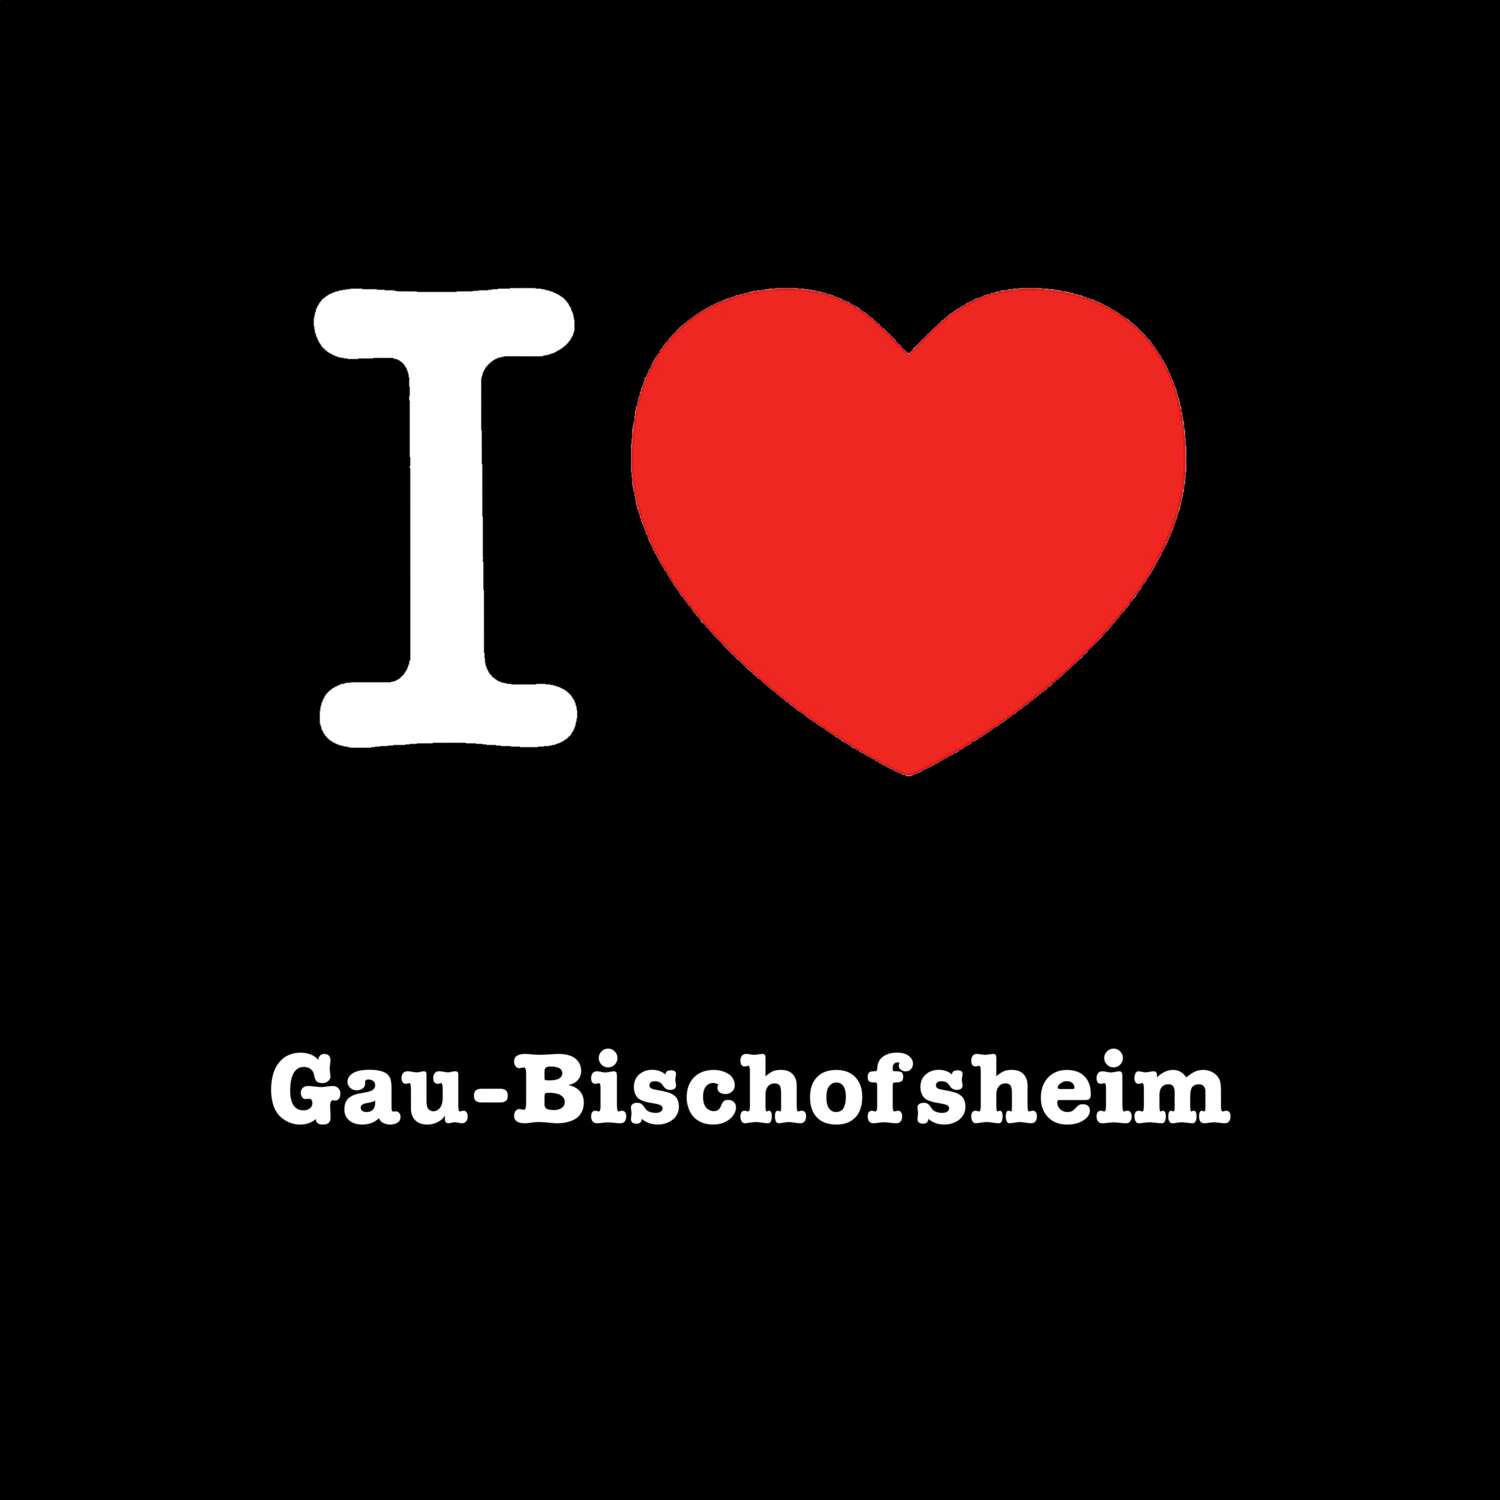 Gau-Bischofsheim T-Shirt »I love«